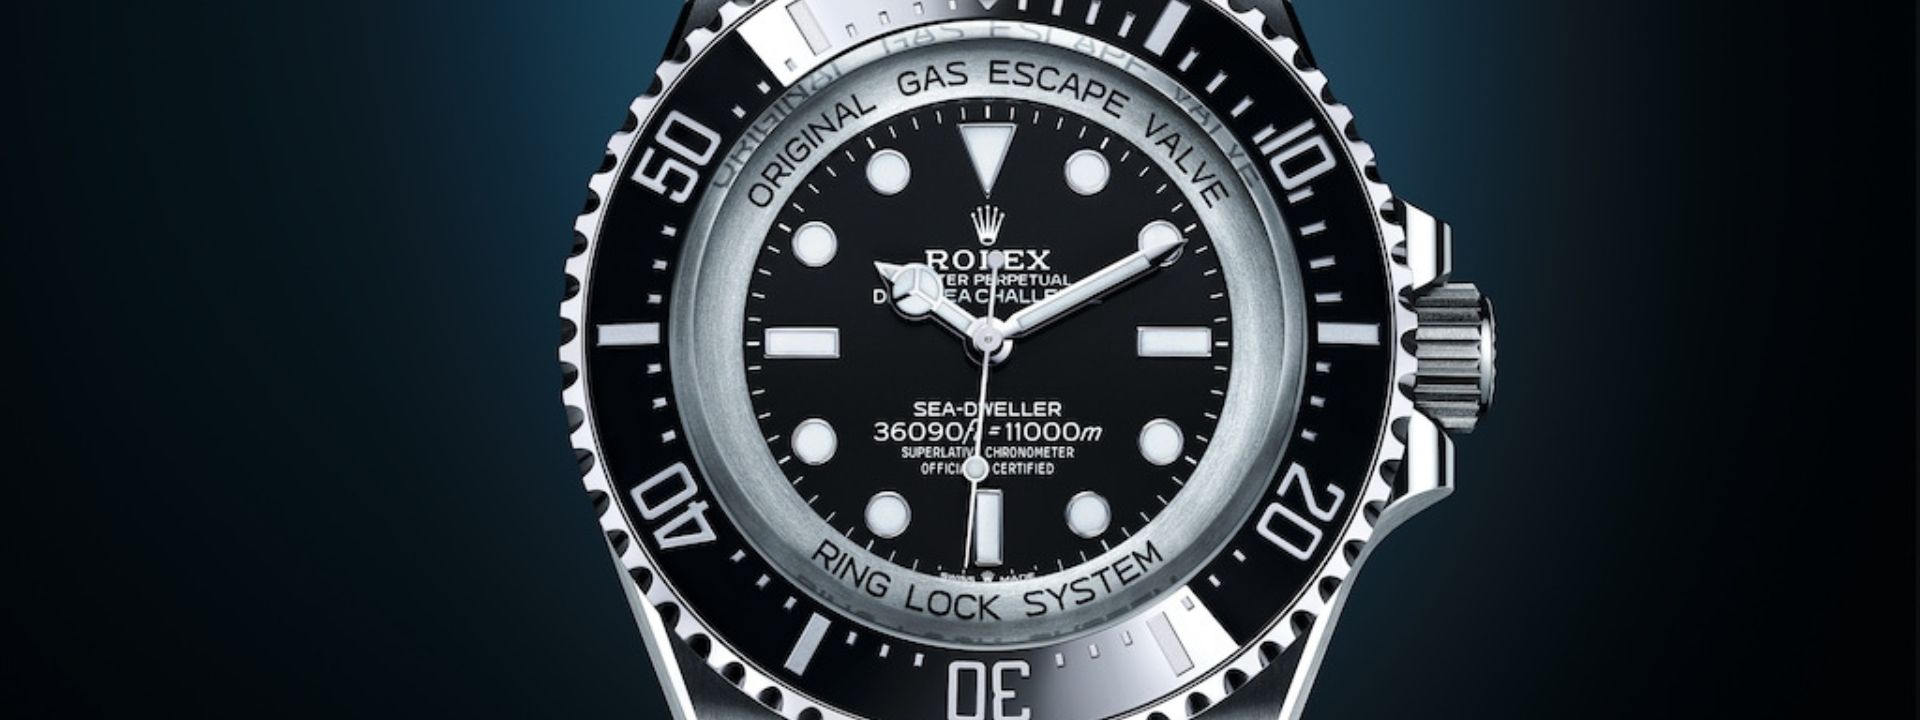 No momento você está vendo Rolex anuncia o novo Deepsea Challenge, em comemoração aos 10 anos da expedição com James Cameron